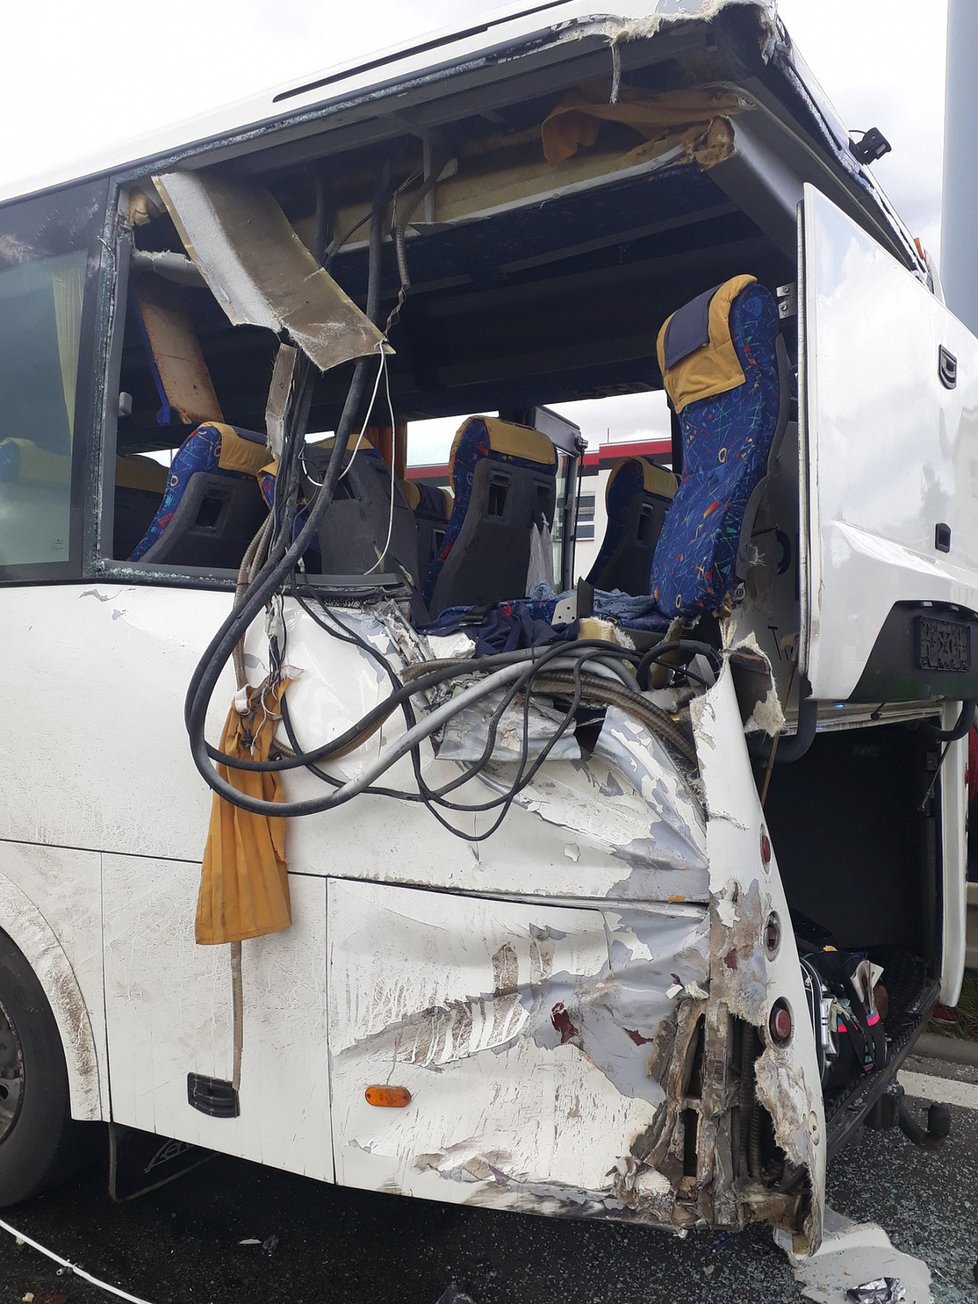 V Brně ve Vídeňské ulici se ve čtvrtek po poledni srazil autobus s nákladním vozem. Jedna cestující nepřežila, dalších sedm lidí se zranilo.